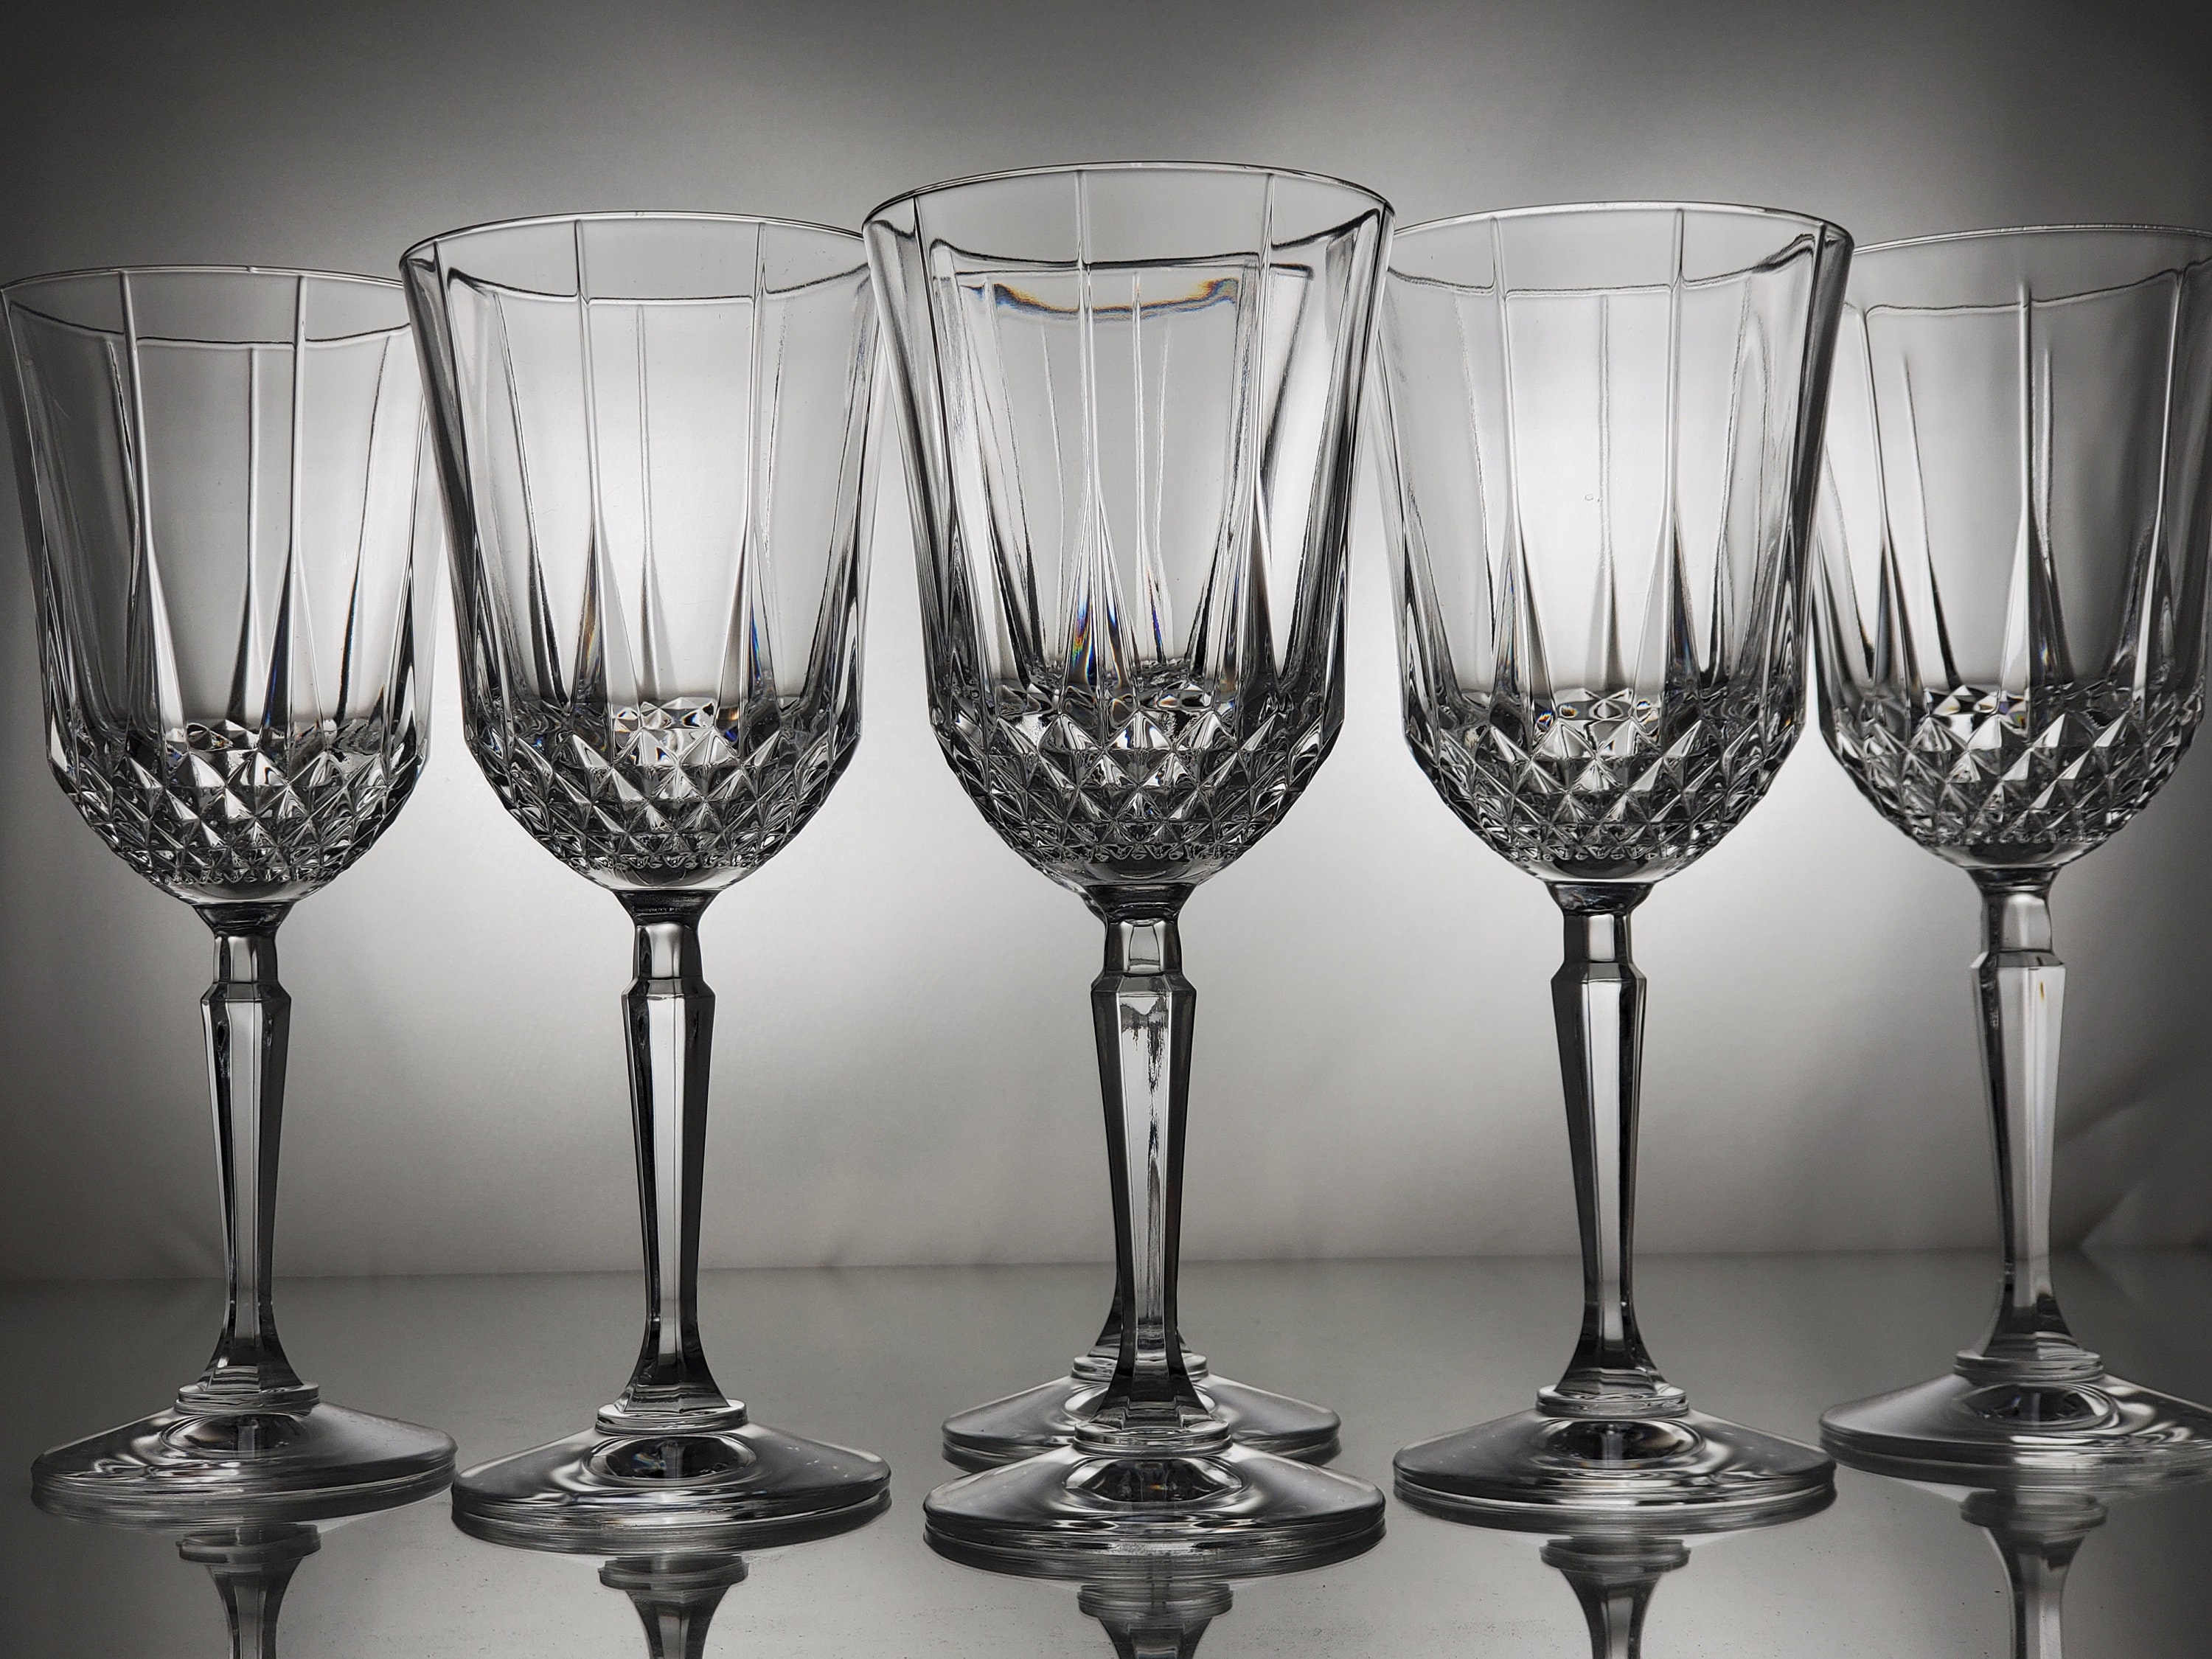 Quinn Amber White Wine Glasses  White wine glass set, White wine glasses,  Amber glassware